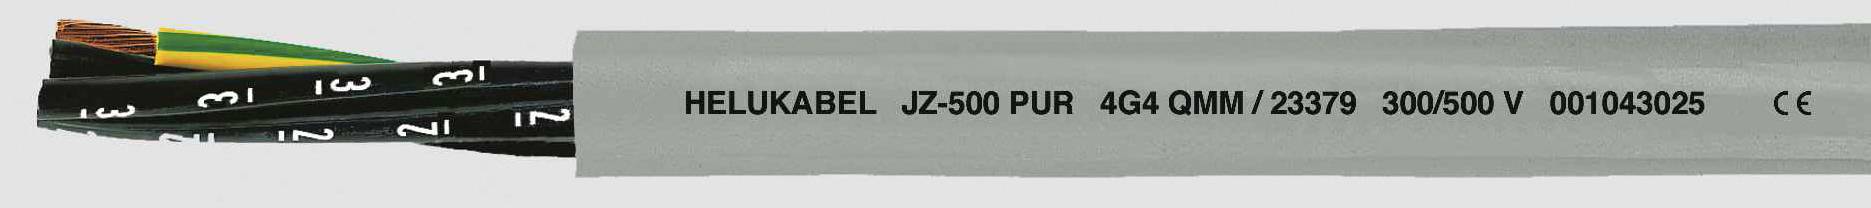 HELUKABEL JZ-500 PUR Steuerleitung 7 G 0.75 mm² Grau 23336-1000 1000 m